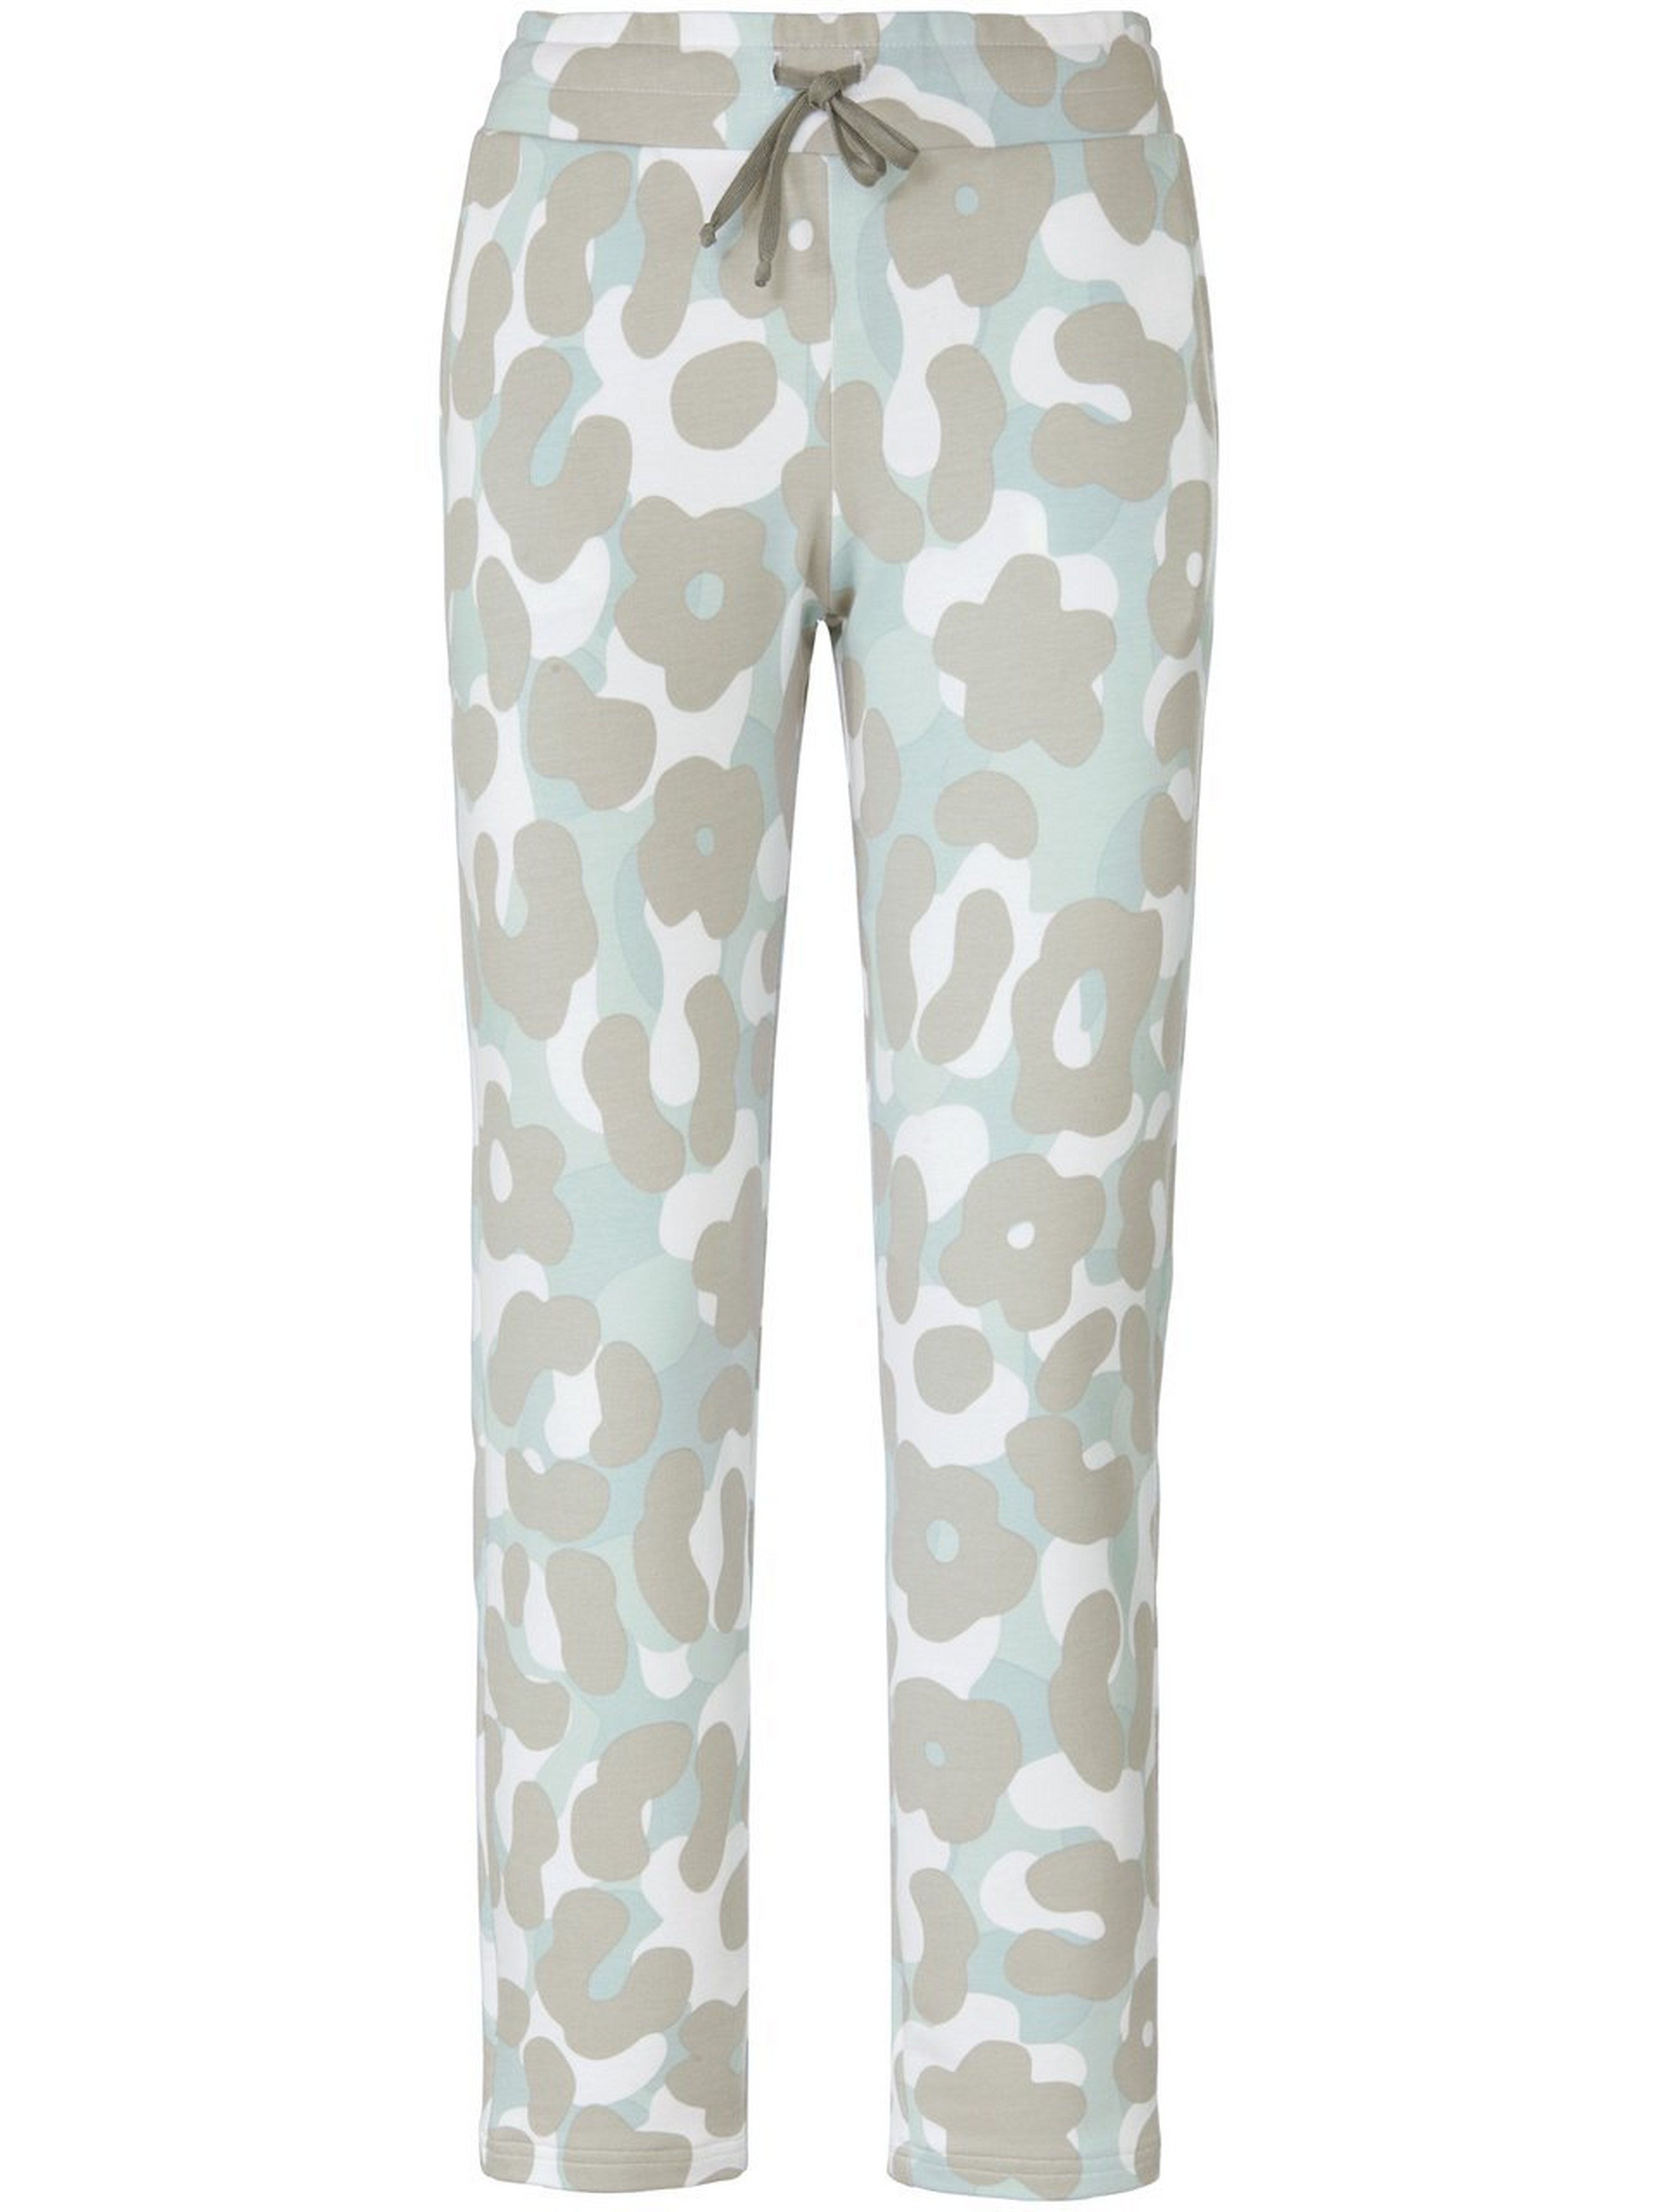 Le pantalon en sweat imprimé camouflage  thx/roesch vert